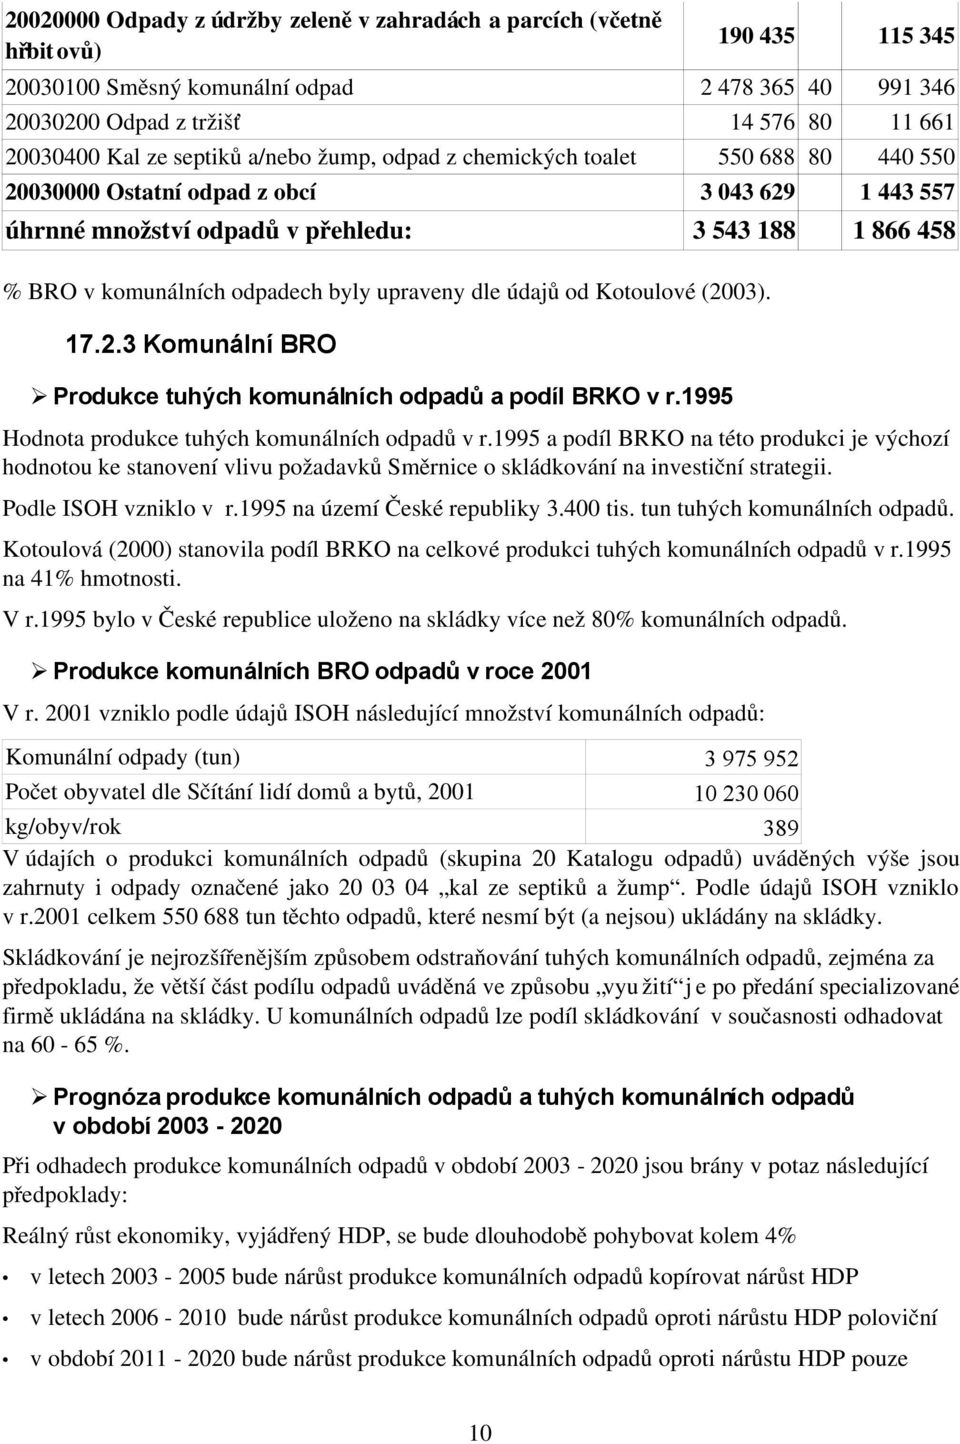 byly upraveny dle údajů od Kotoulové (2003). 17.2.3 Komunální BRO Produkce tuhých komunálních odpadů a podíl BRKO v r.1995 Hodnota produkce tuhých komunálních odpadů v r.